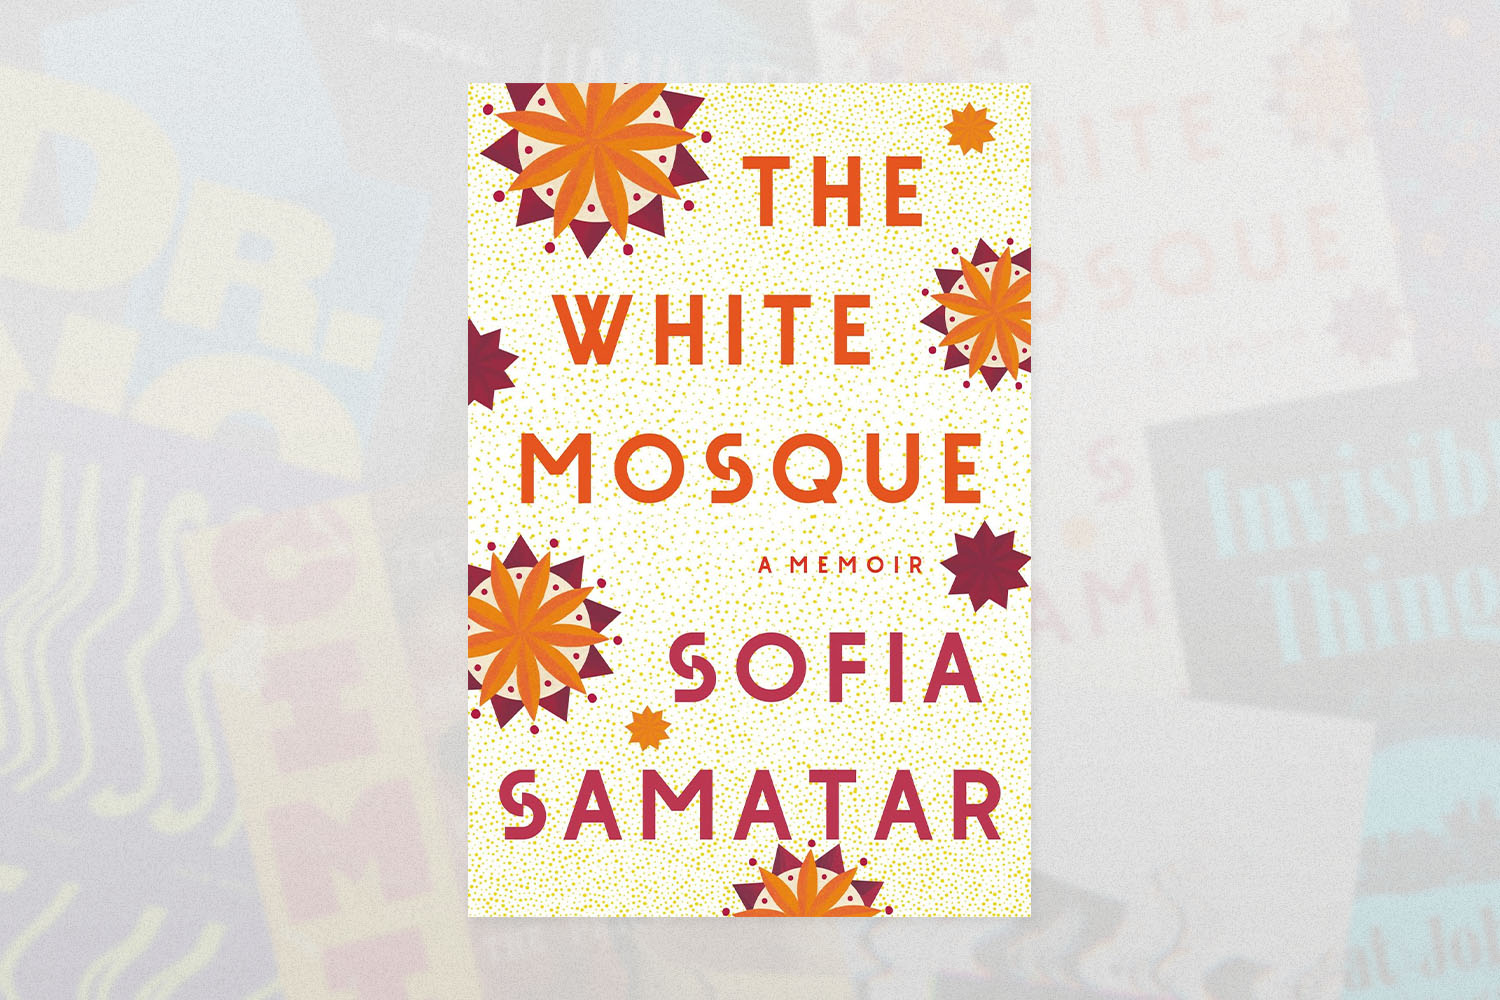 The White Mosque- A Memoir, Sofia Samatar